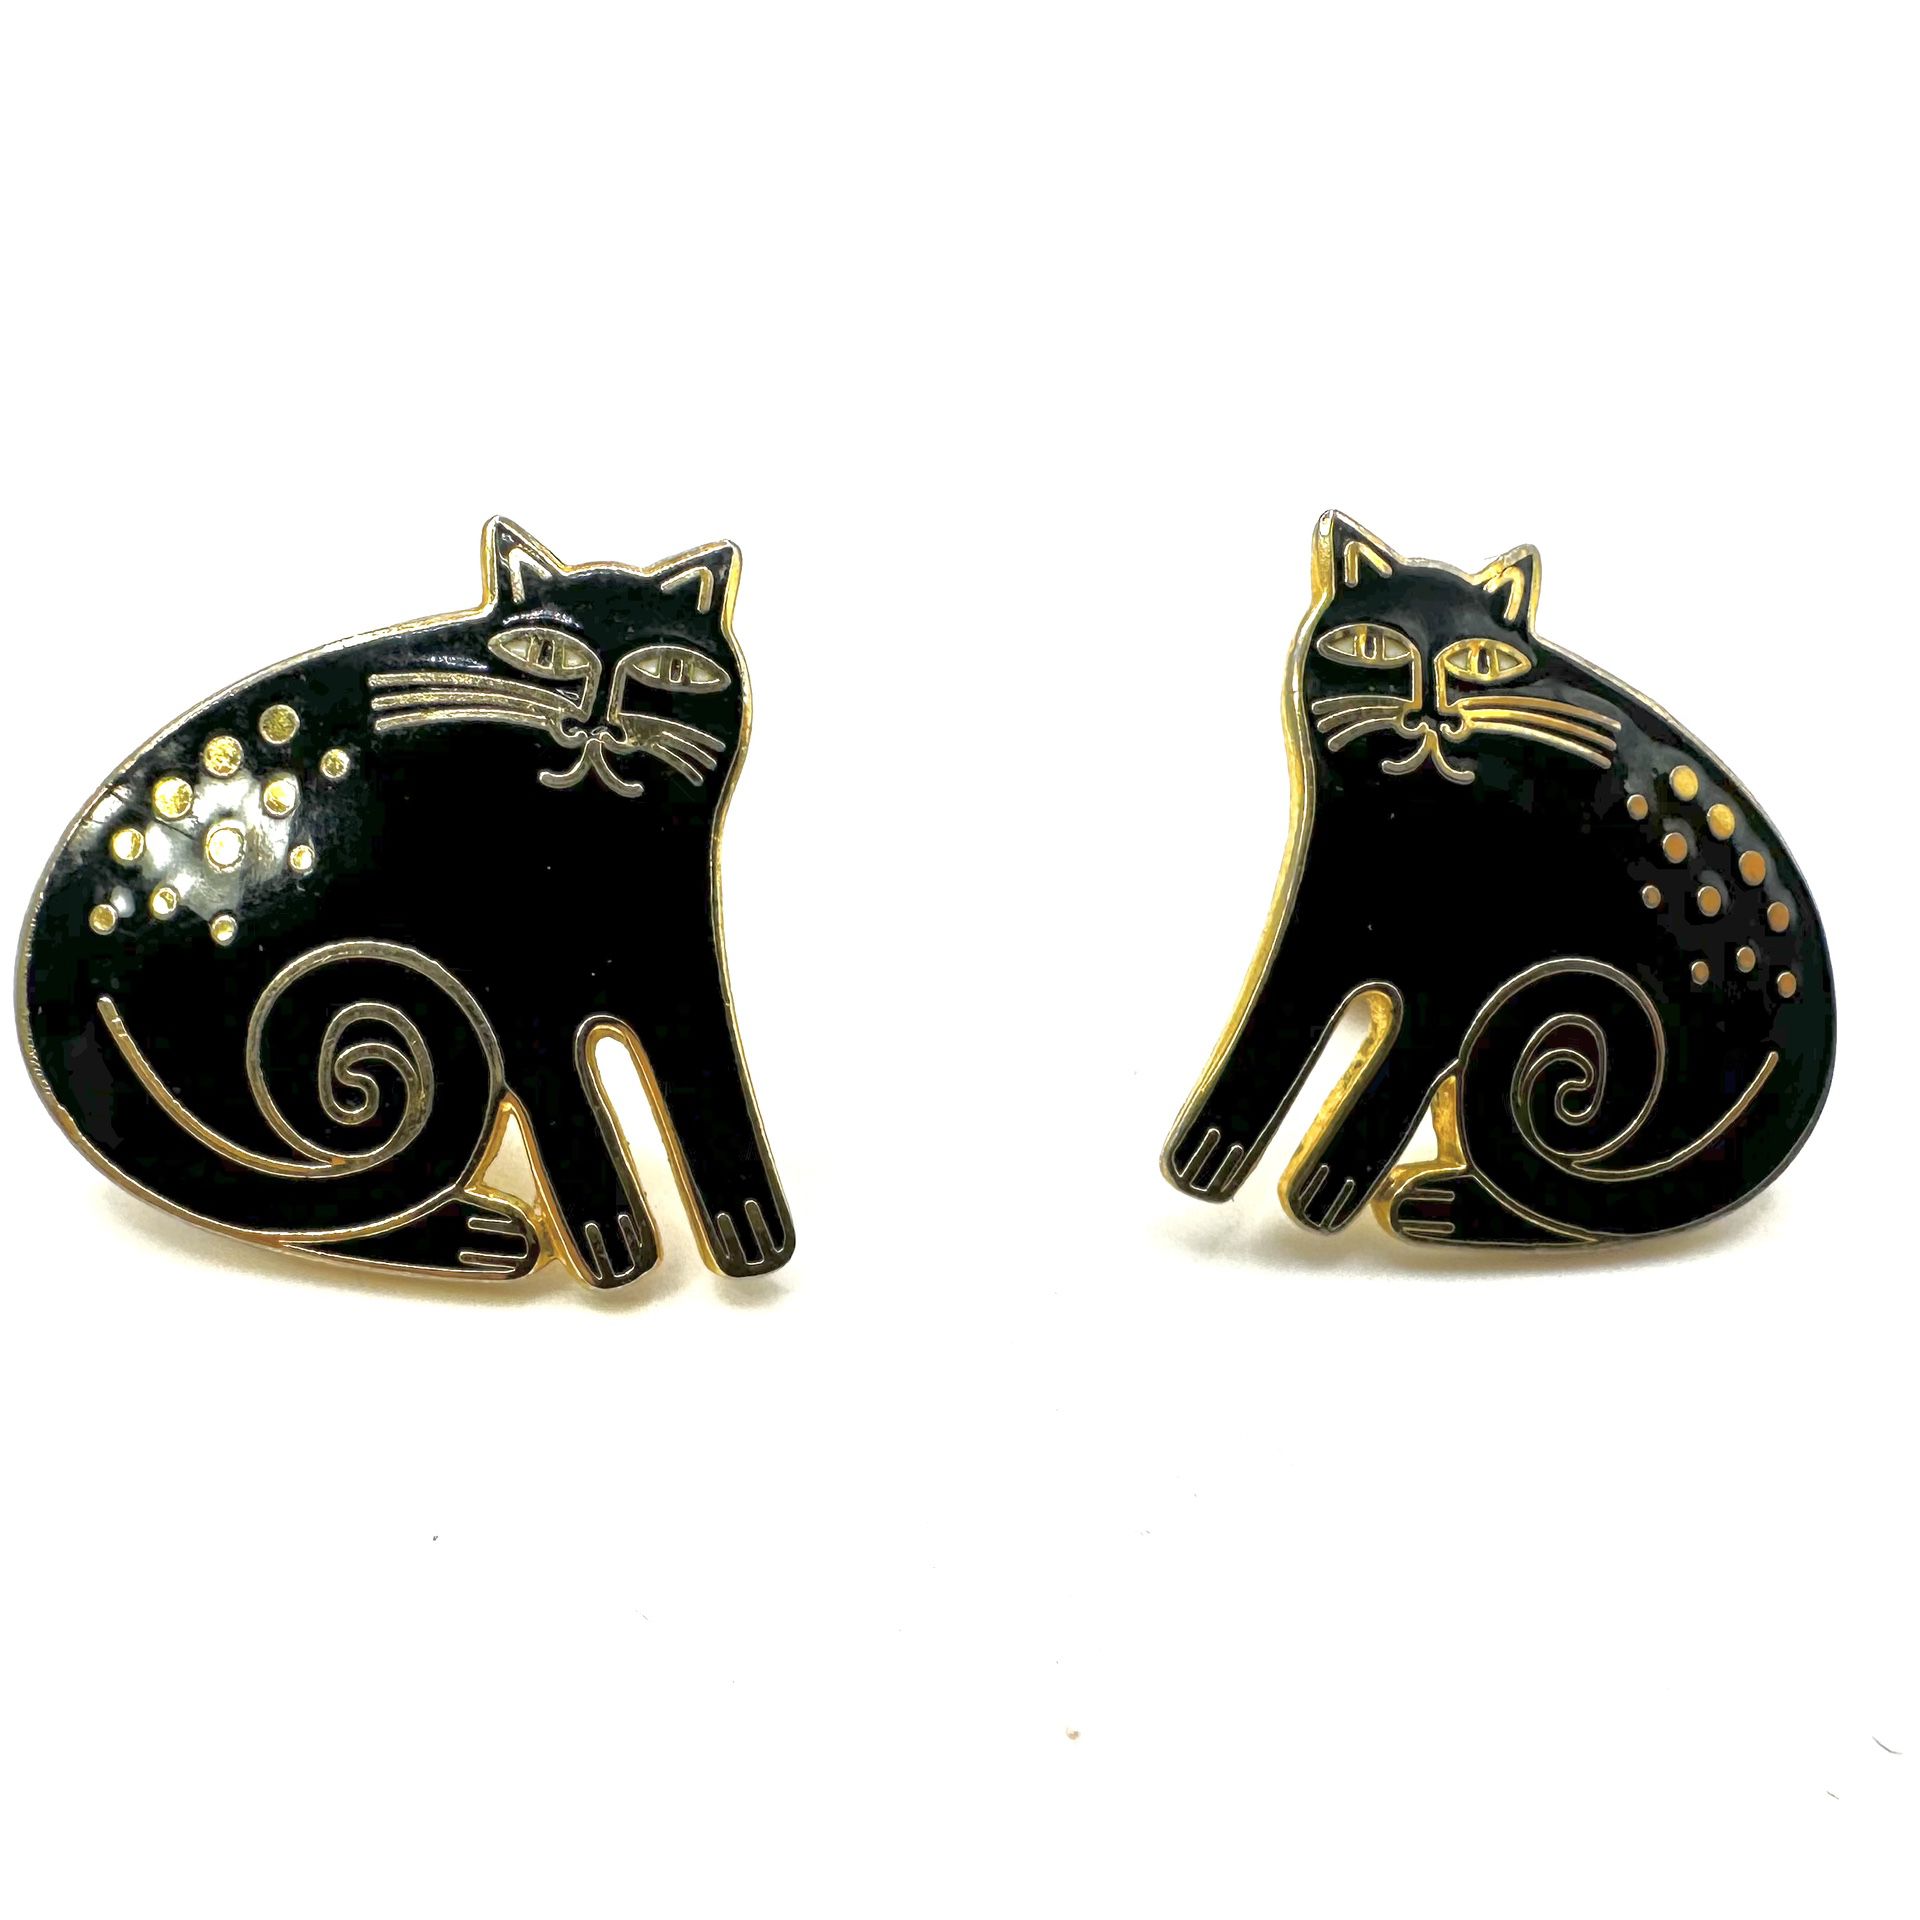 Vintage  Laurel Burch  black   Keshire  cat   cloisonné earrings 